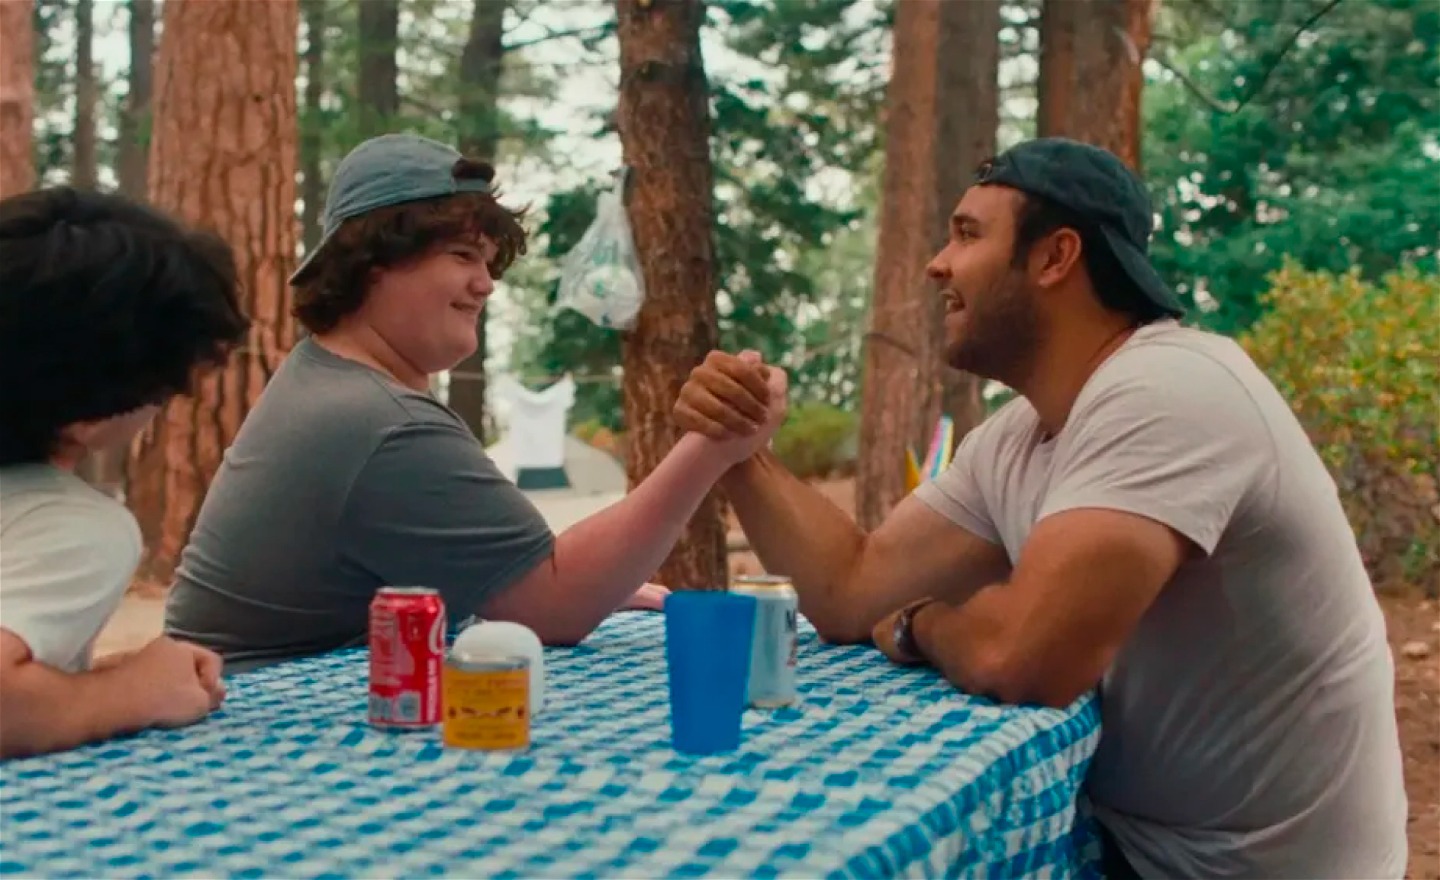 Två tonårspojkar pojkar och en man sitter vid ett picknick-bord i skogen. Ena pojken bryter arm med mannen. Båda ser glada ut.